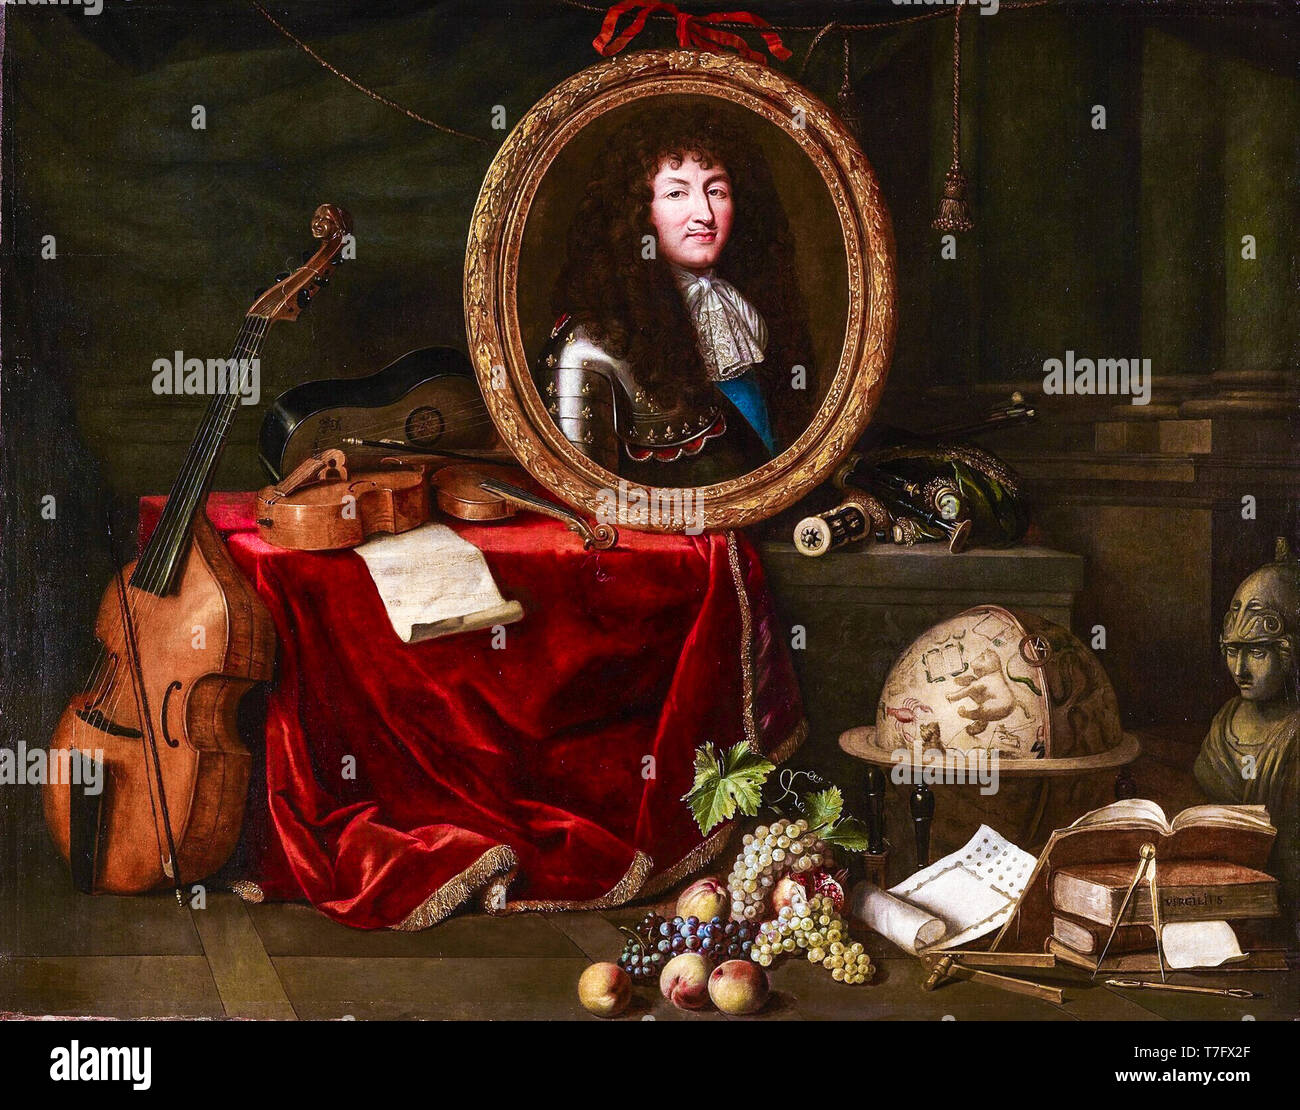 Louis XIV., der Beschützer der Künste und der Wissenschaften. Allegorie von 1672, Gemälde von Jean Garnier, nach Claude Lefèbvre, C. 1670-1672 Stockfoto